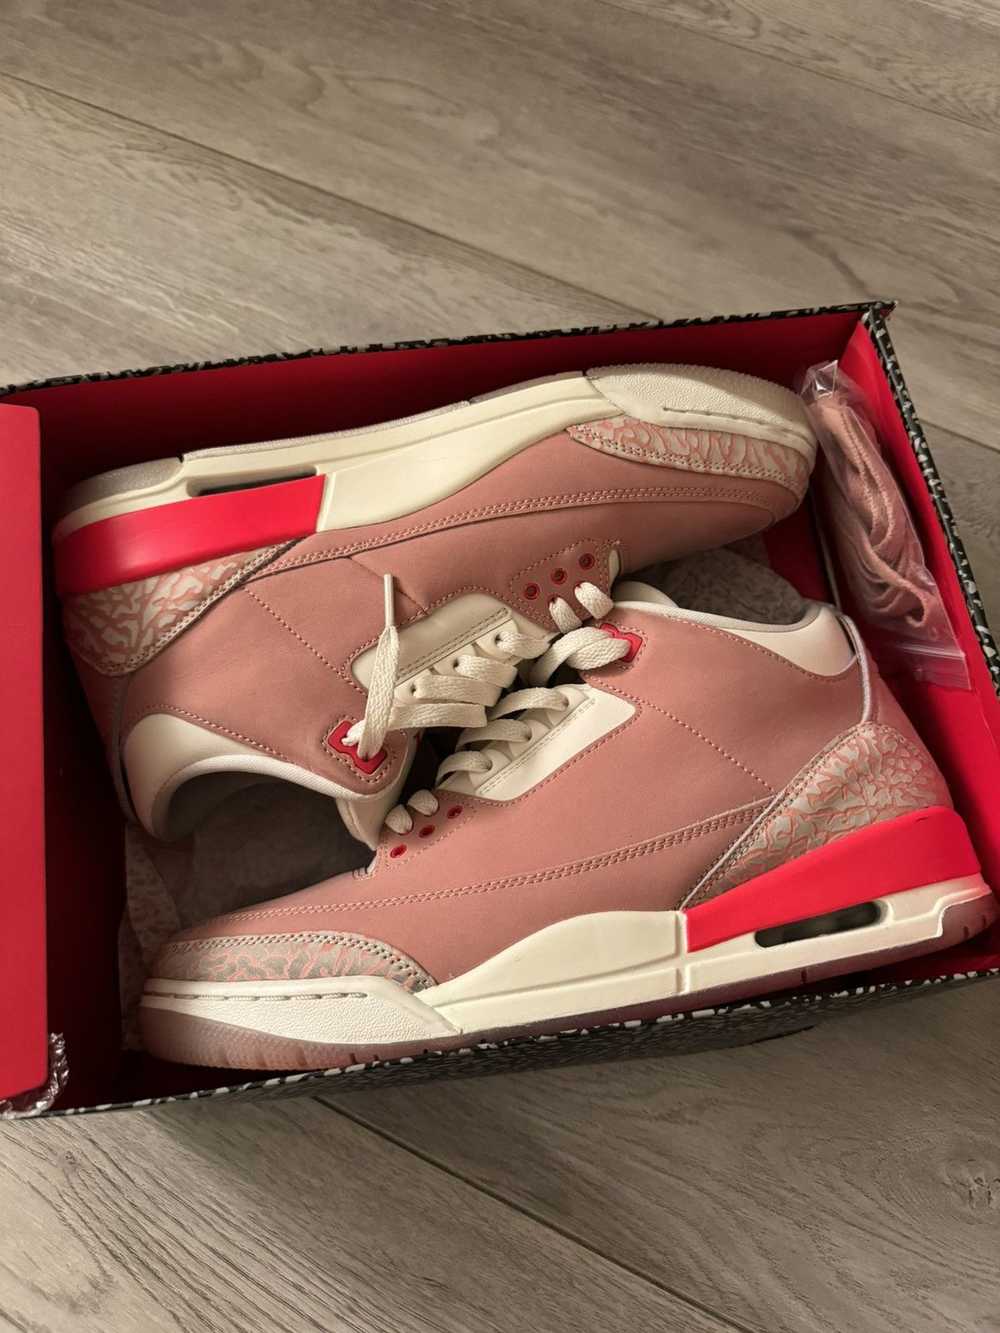 Jordan Brand × Nike Air Jordan 3 “Rust Pink” - image 10